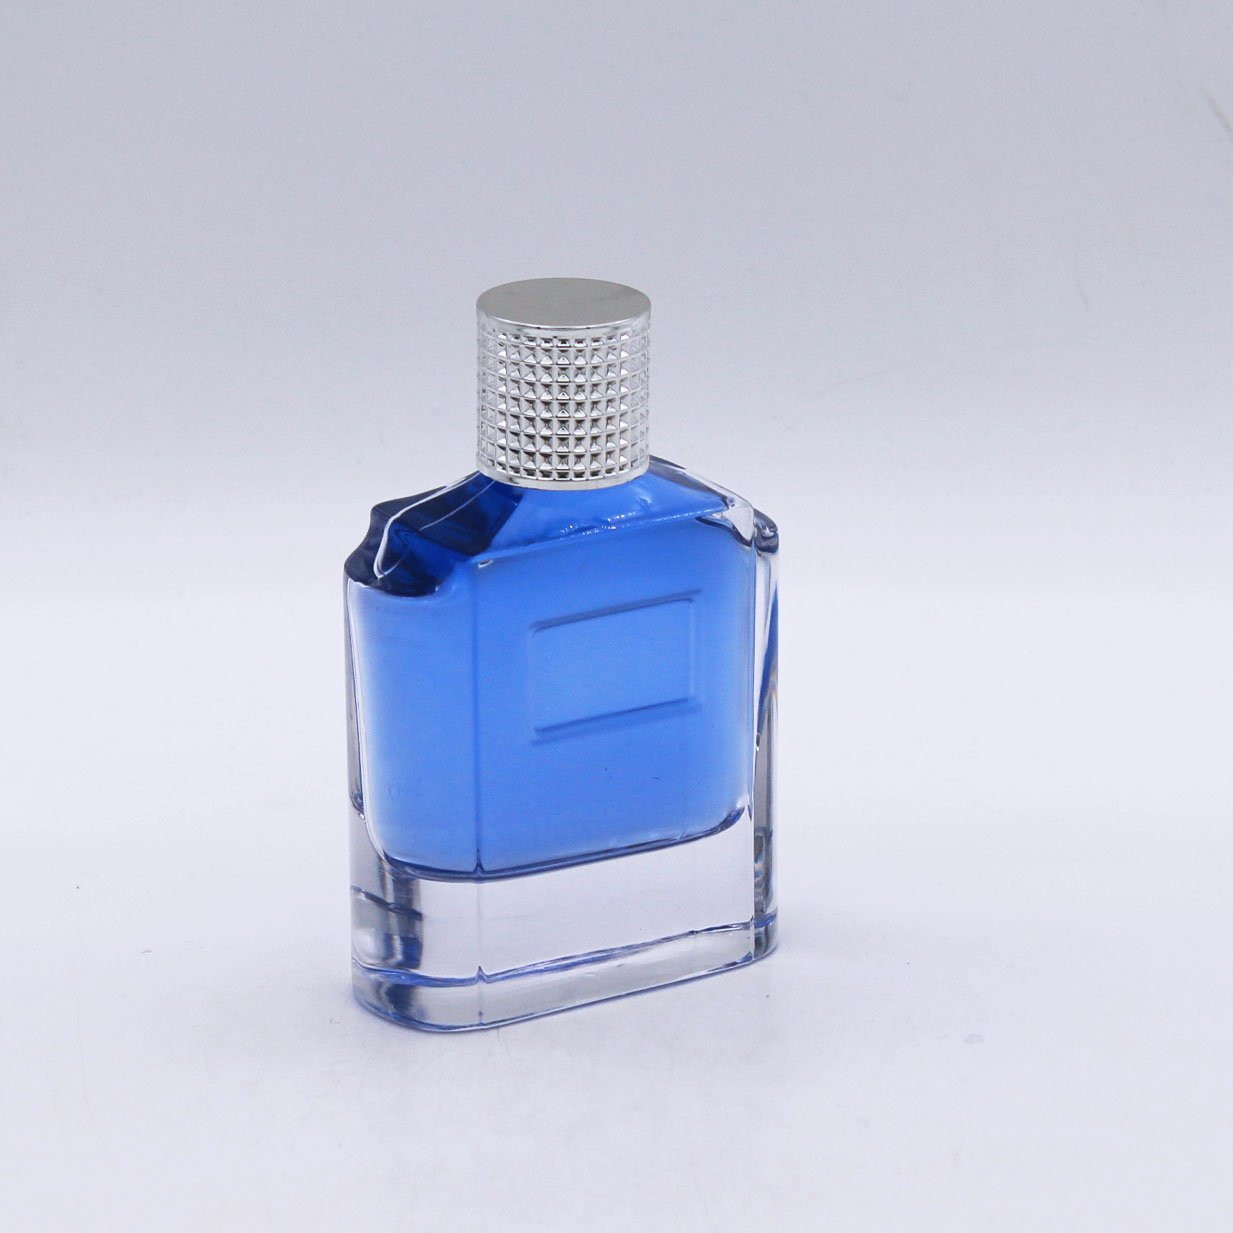 Vintage Cobalt Blue Perfume Bottle Essential Oil Bottles 